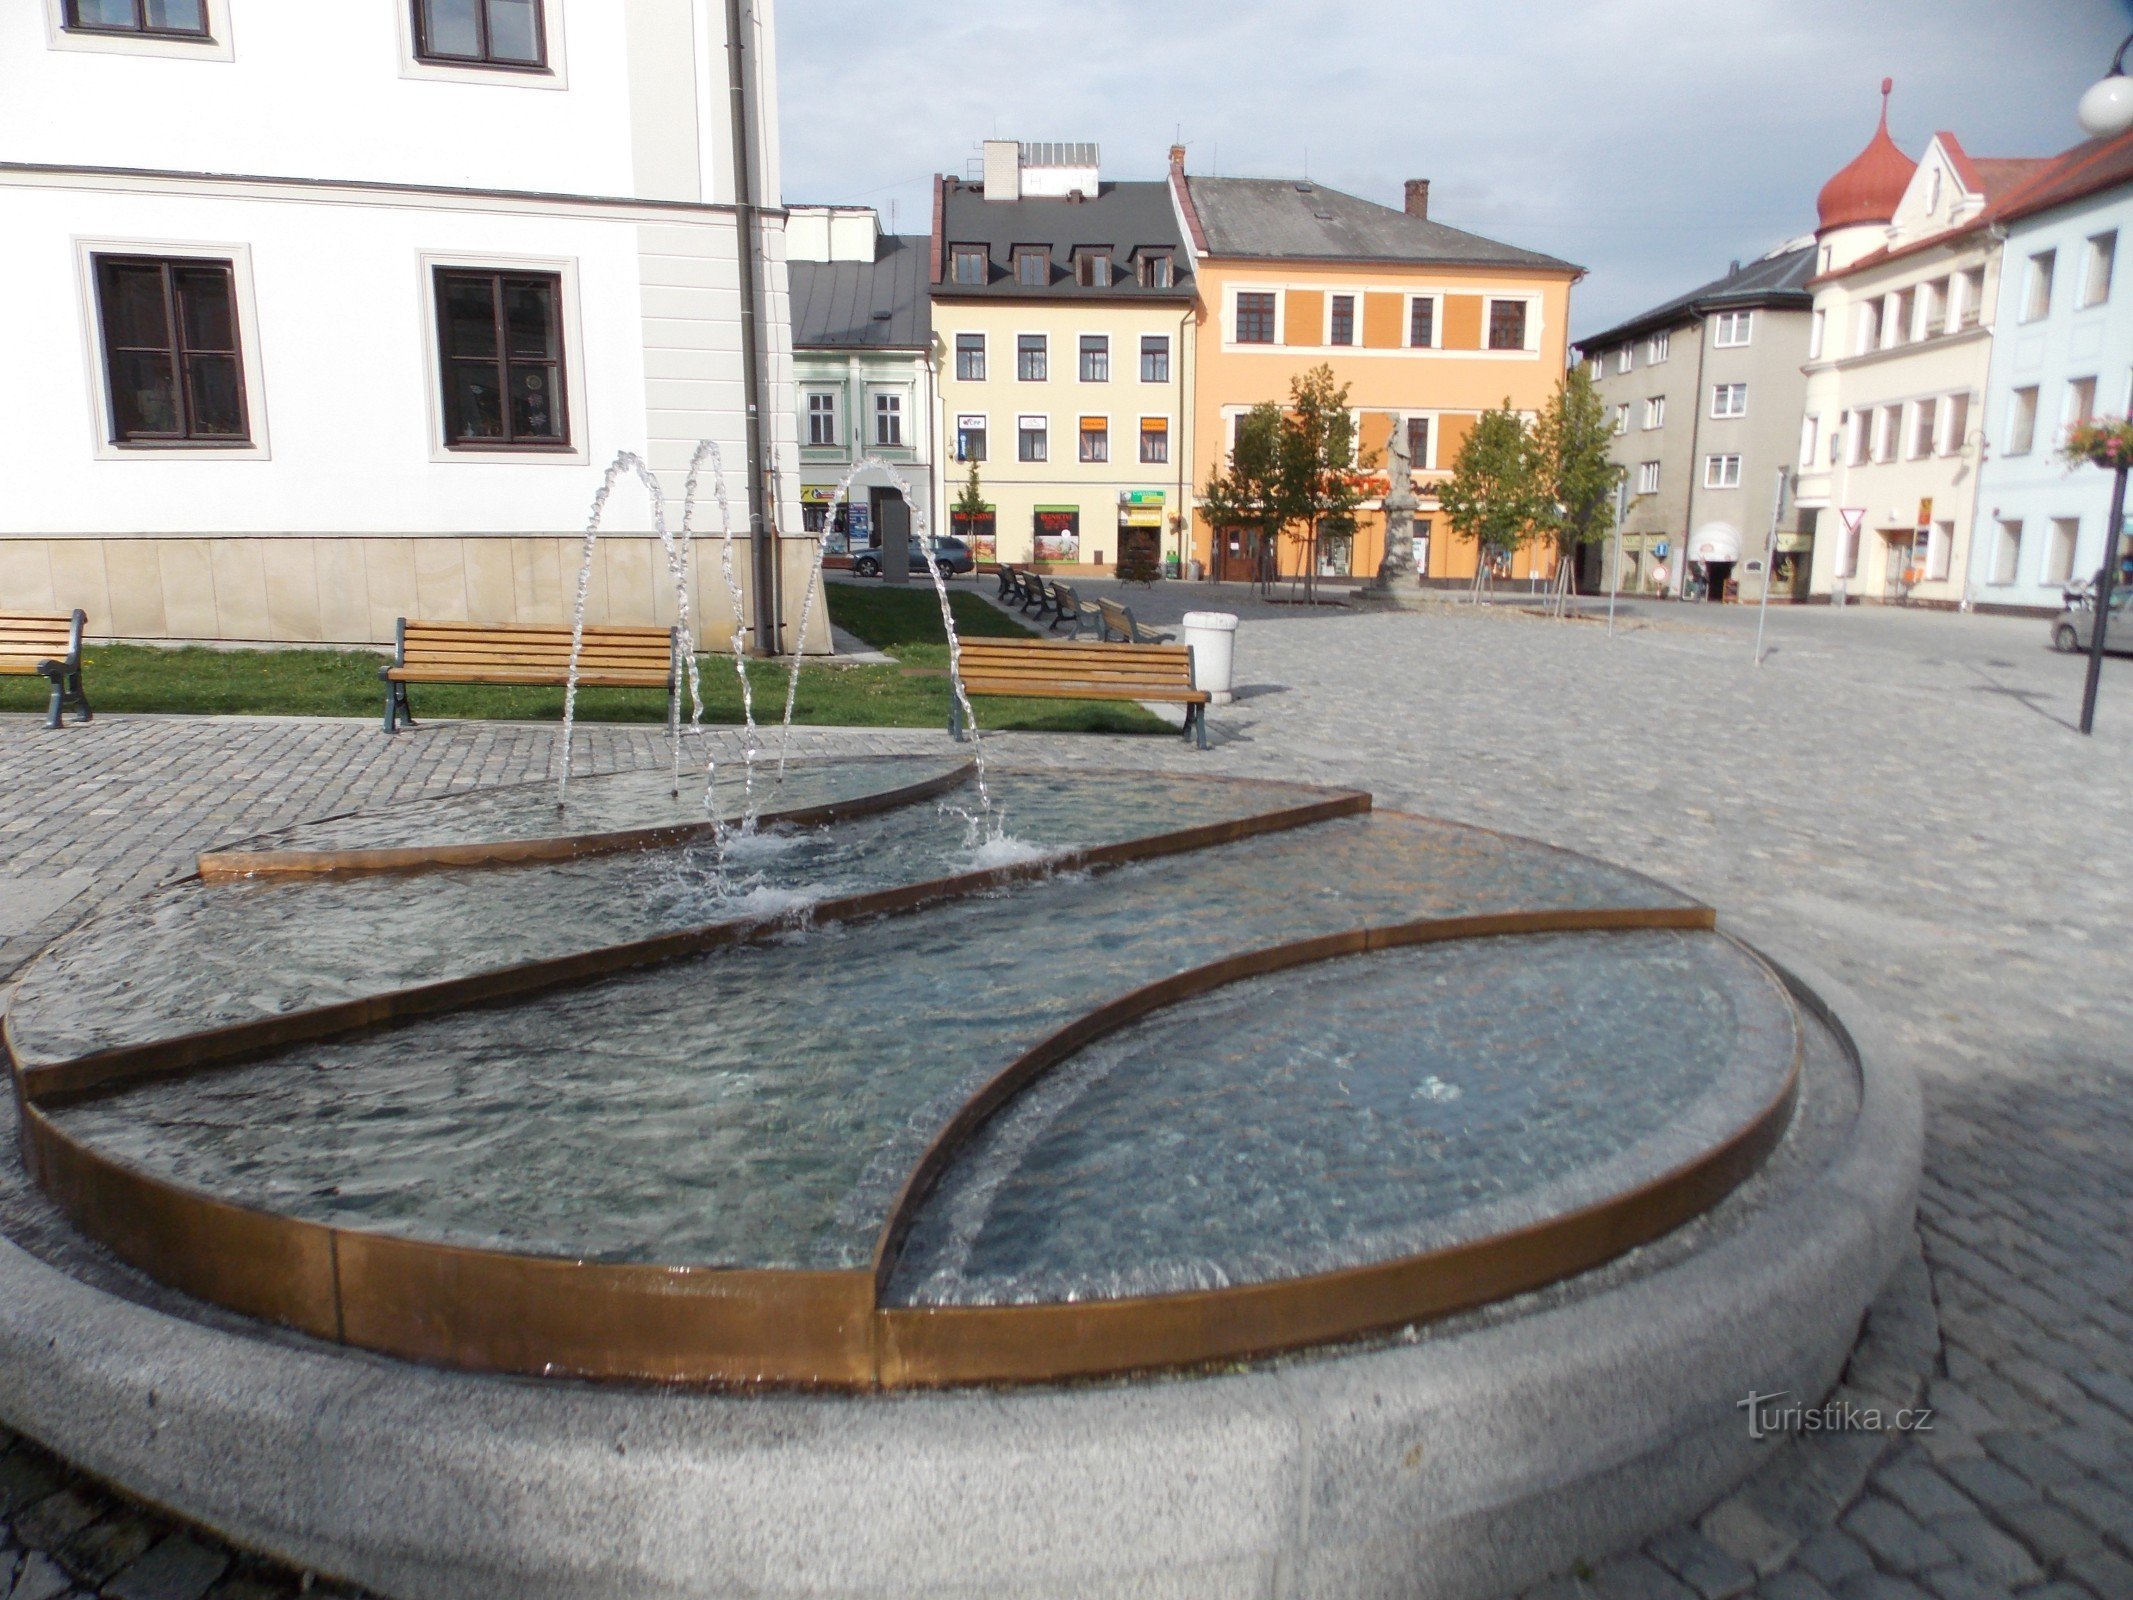 Dekoration des Rýmařov-Platzes - neuer Brunnen